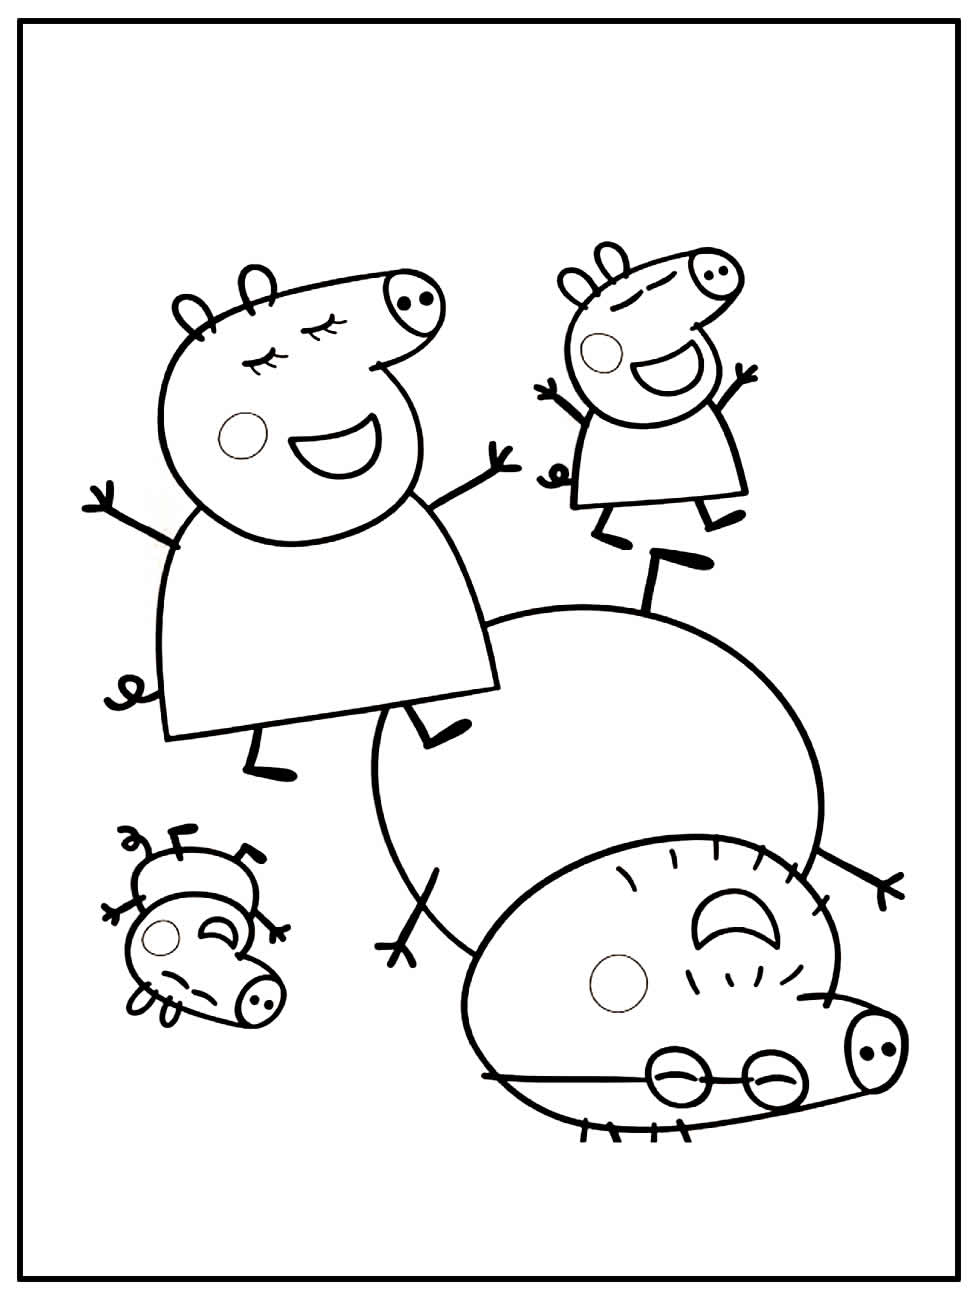 Página para colorir da Peppa Pig